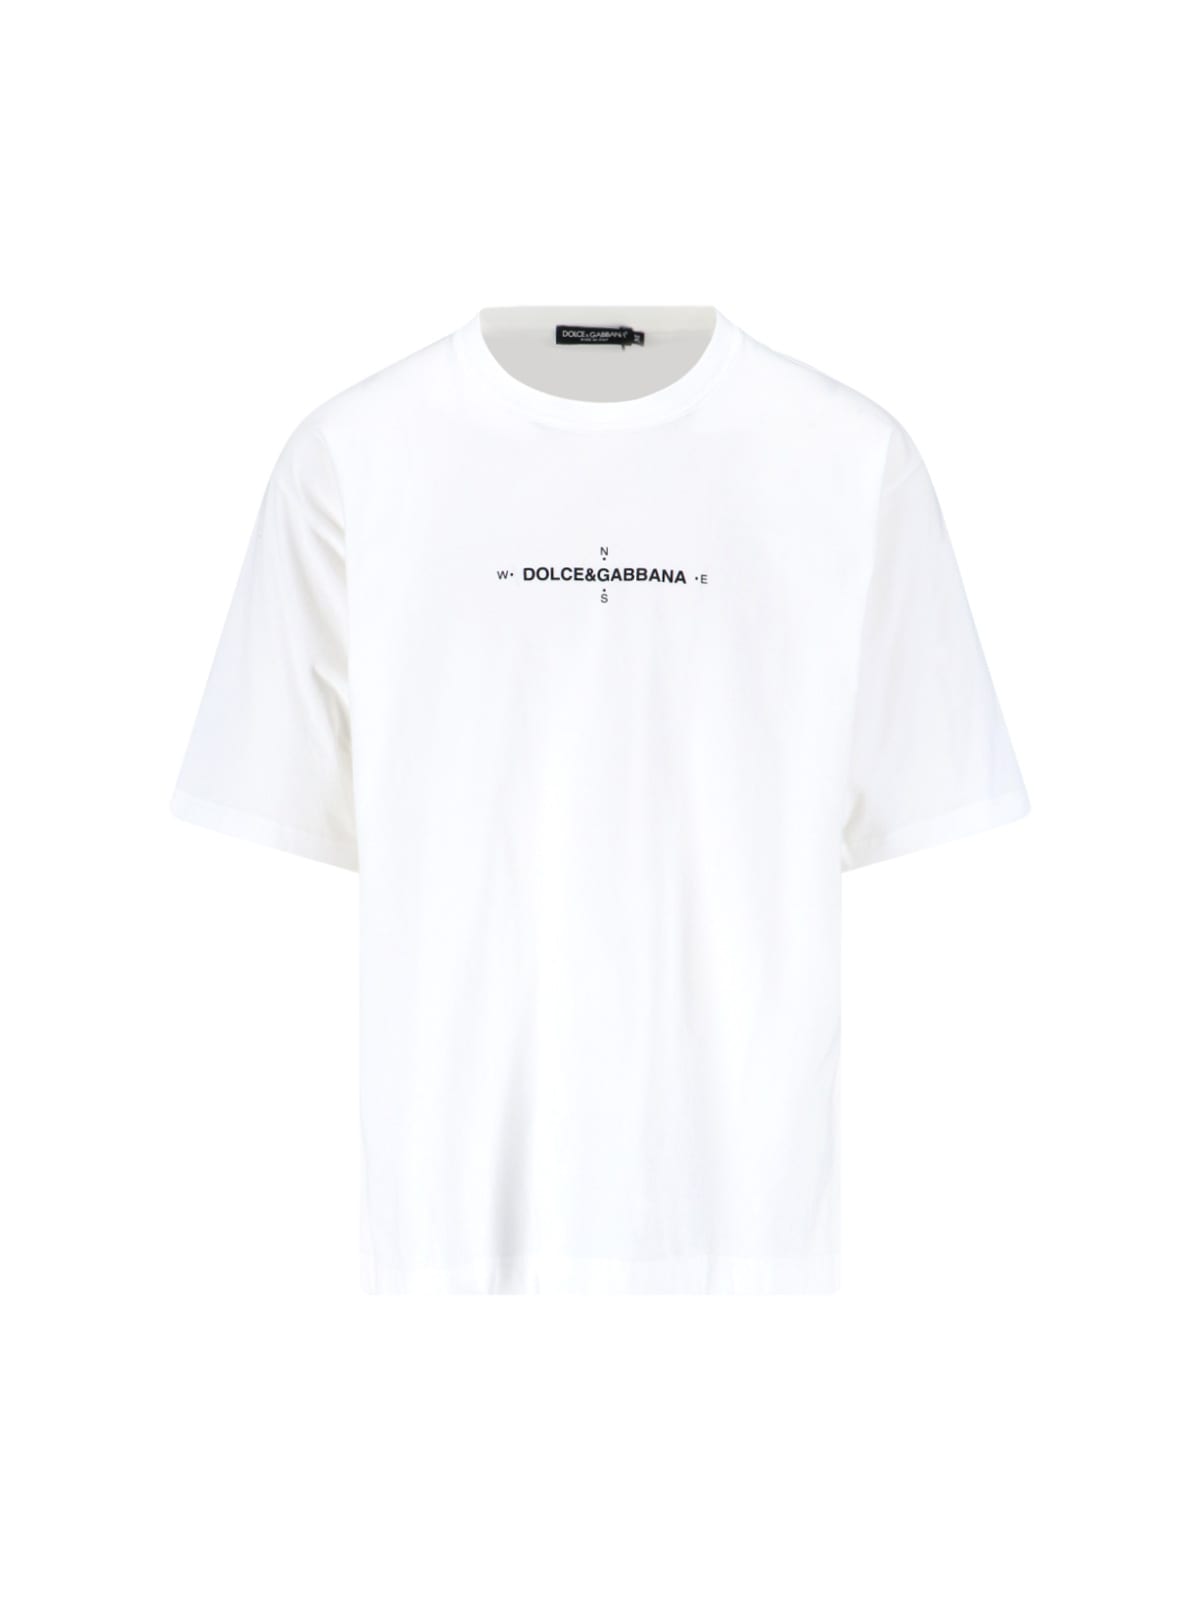 Dolce & Gabbana Marina Print T-shirt In White